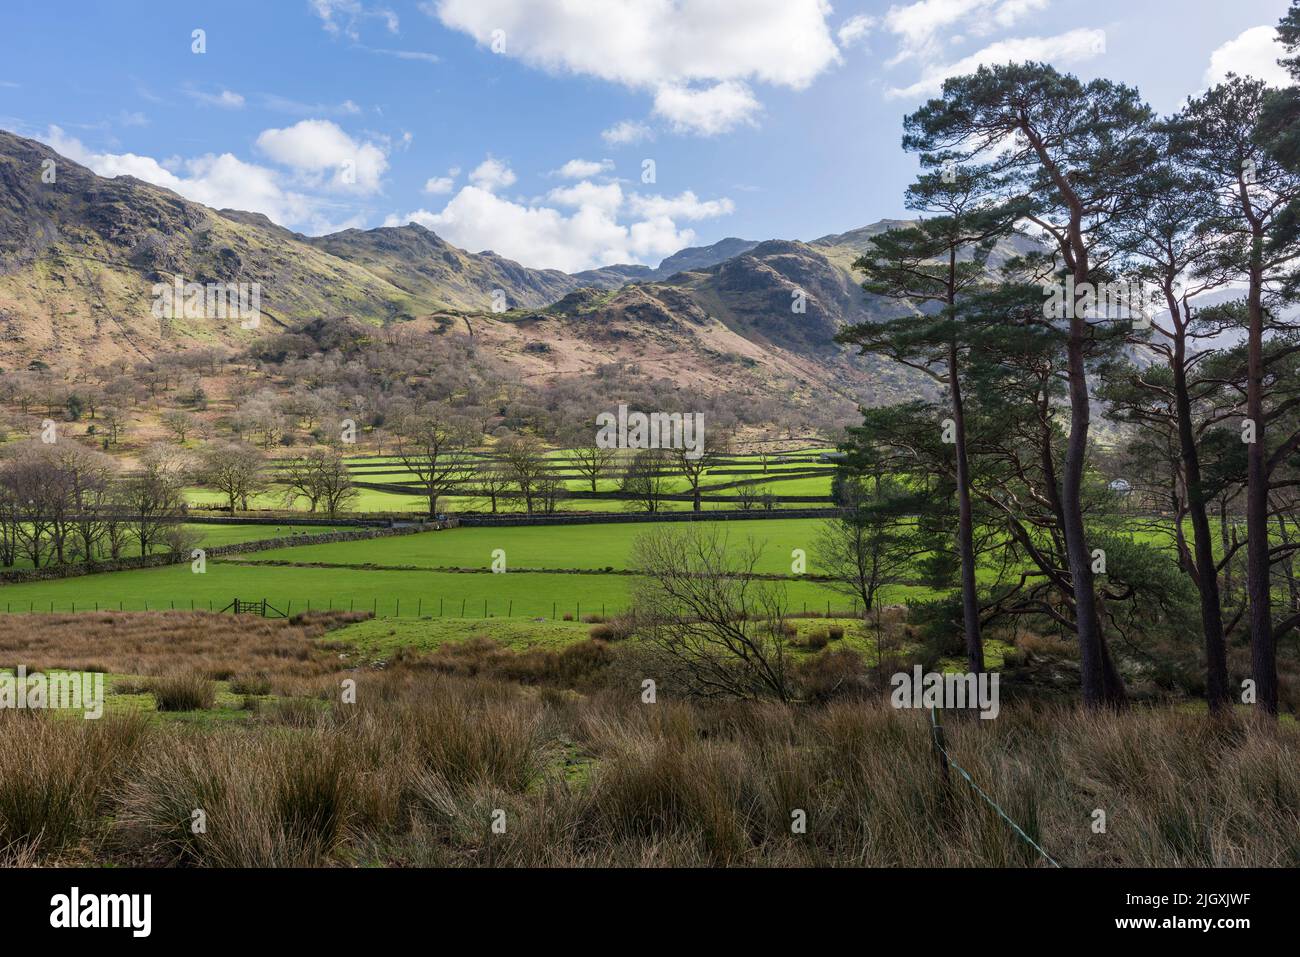 La vallée de Borrowdale au début du printemps, à Seatoller, dans le parc national de Lake District, Cumbria, Angleterre. Banque D'Images